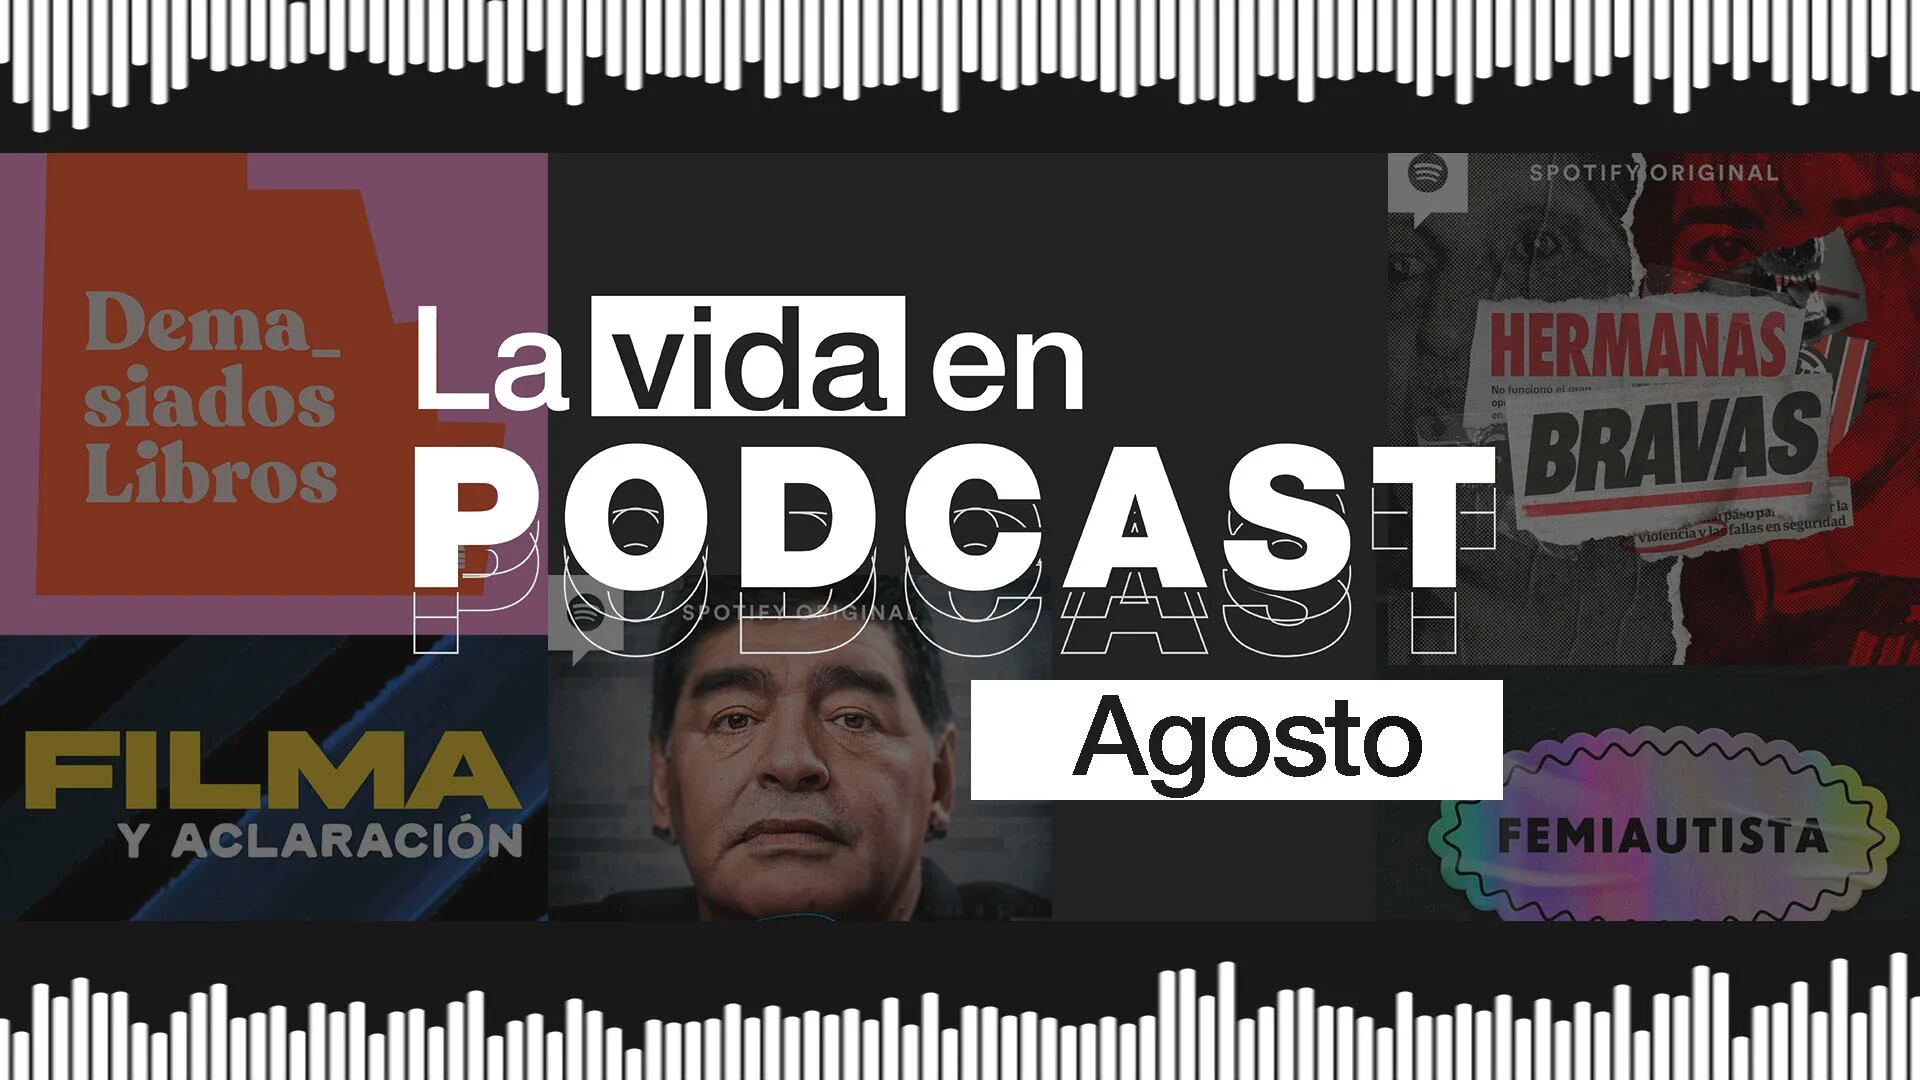 La vida en podcast: los recomendados de agosto